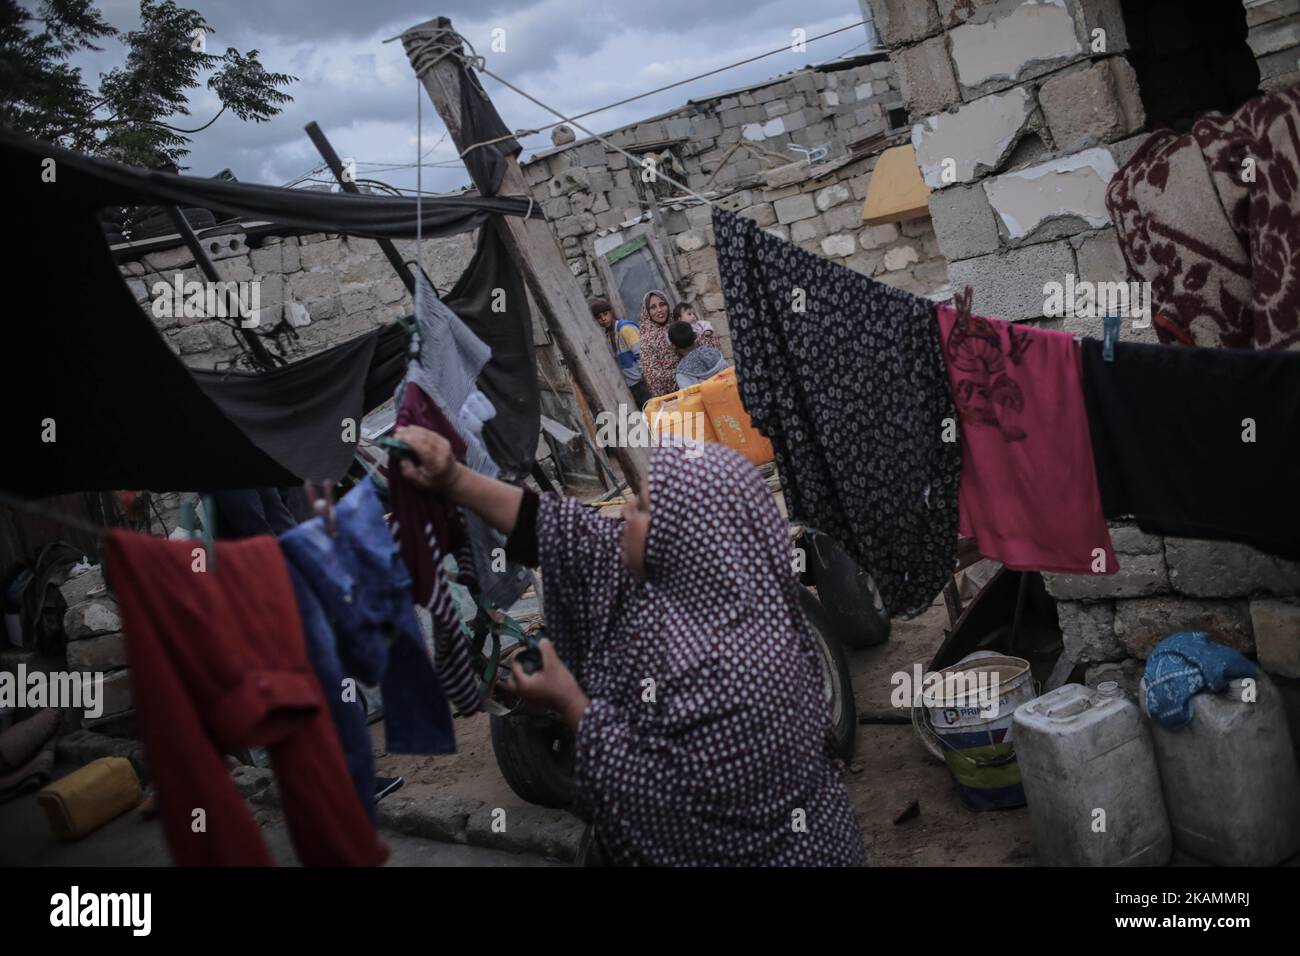 Eine palästinensische Flüchtlingsfrau wäscht sich während eines Stromausfalls im Flüchtlingslager Khanyounis im südlichen Gazastreifen in der Nähe eines Feuers Kleidung, am 23. April 2017. Die meisten Palästinenser im Gazastreifen verwenden Batterien, Generatoren oder Kerzen, um ihre Häuser anzuzünden. Die Bewohner von Gaza, wo rund 1,8 Millionen Menschen leben, erleben täglich rund 20 Stromausfälle. Berichten zufolge ging der einzige funktionierende Strom im Gazastreifen am 16. April 2017 aus dem Treibstoff und hörte auf zu arbeiten. Der Betrieb des Werks der Gaza Power Generating Company funktioniert in der Regel nur acht Stunden am Tag, nachdem der Brennstoff durch den israelischen Ker in den Gazastreifen eingedringen ist Stockfoto